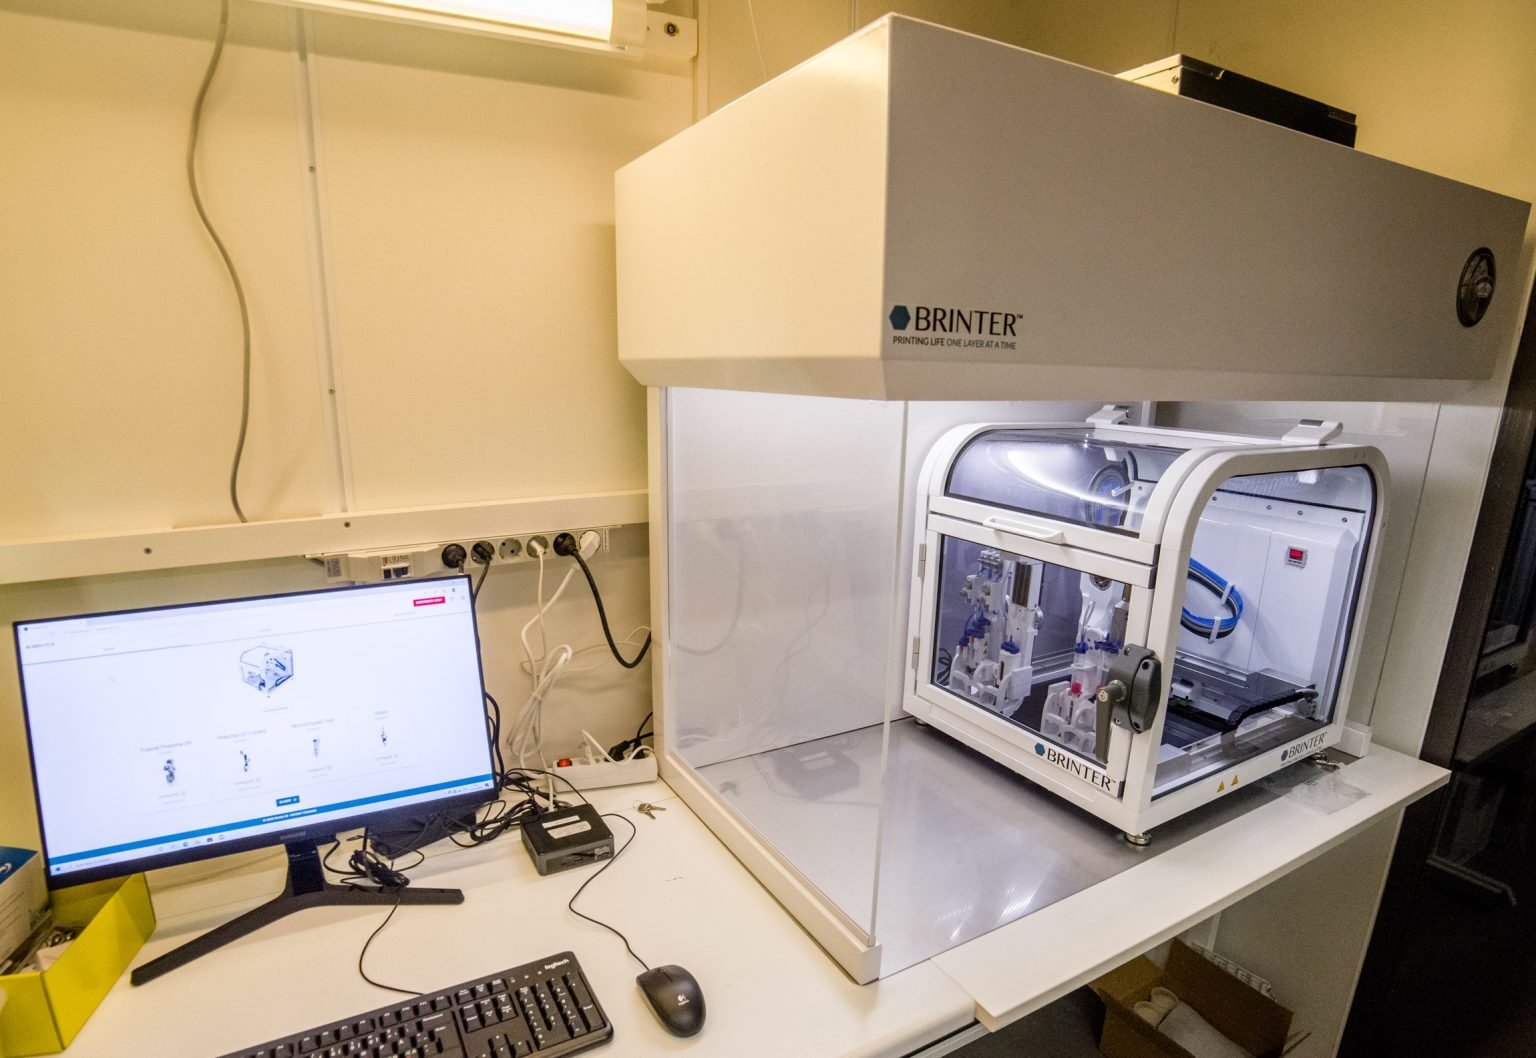 ראש ההדפסה הדיגיטלי הרב-חומרי והרב-נוזלי הראשון בעולם שהושק על ידי Brinter יאפשר תיקון רקמות ברמת דיוק גבוהה יותר